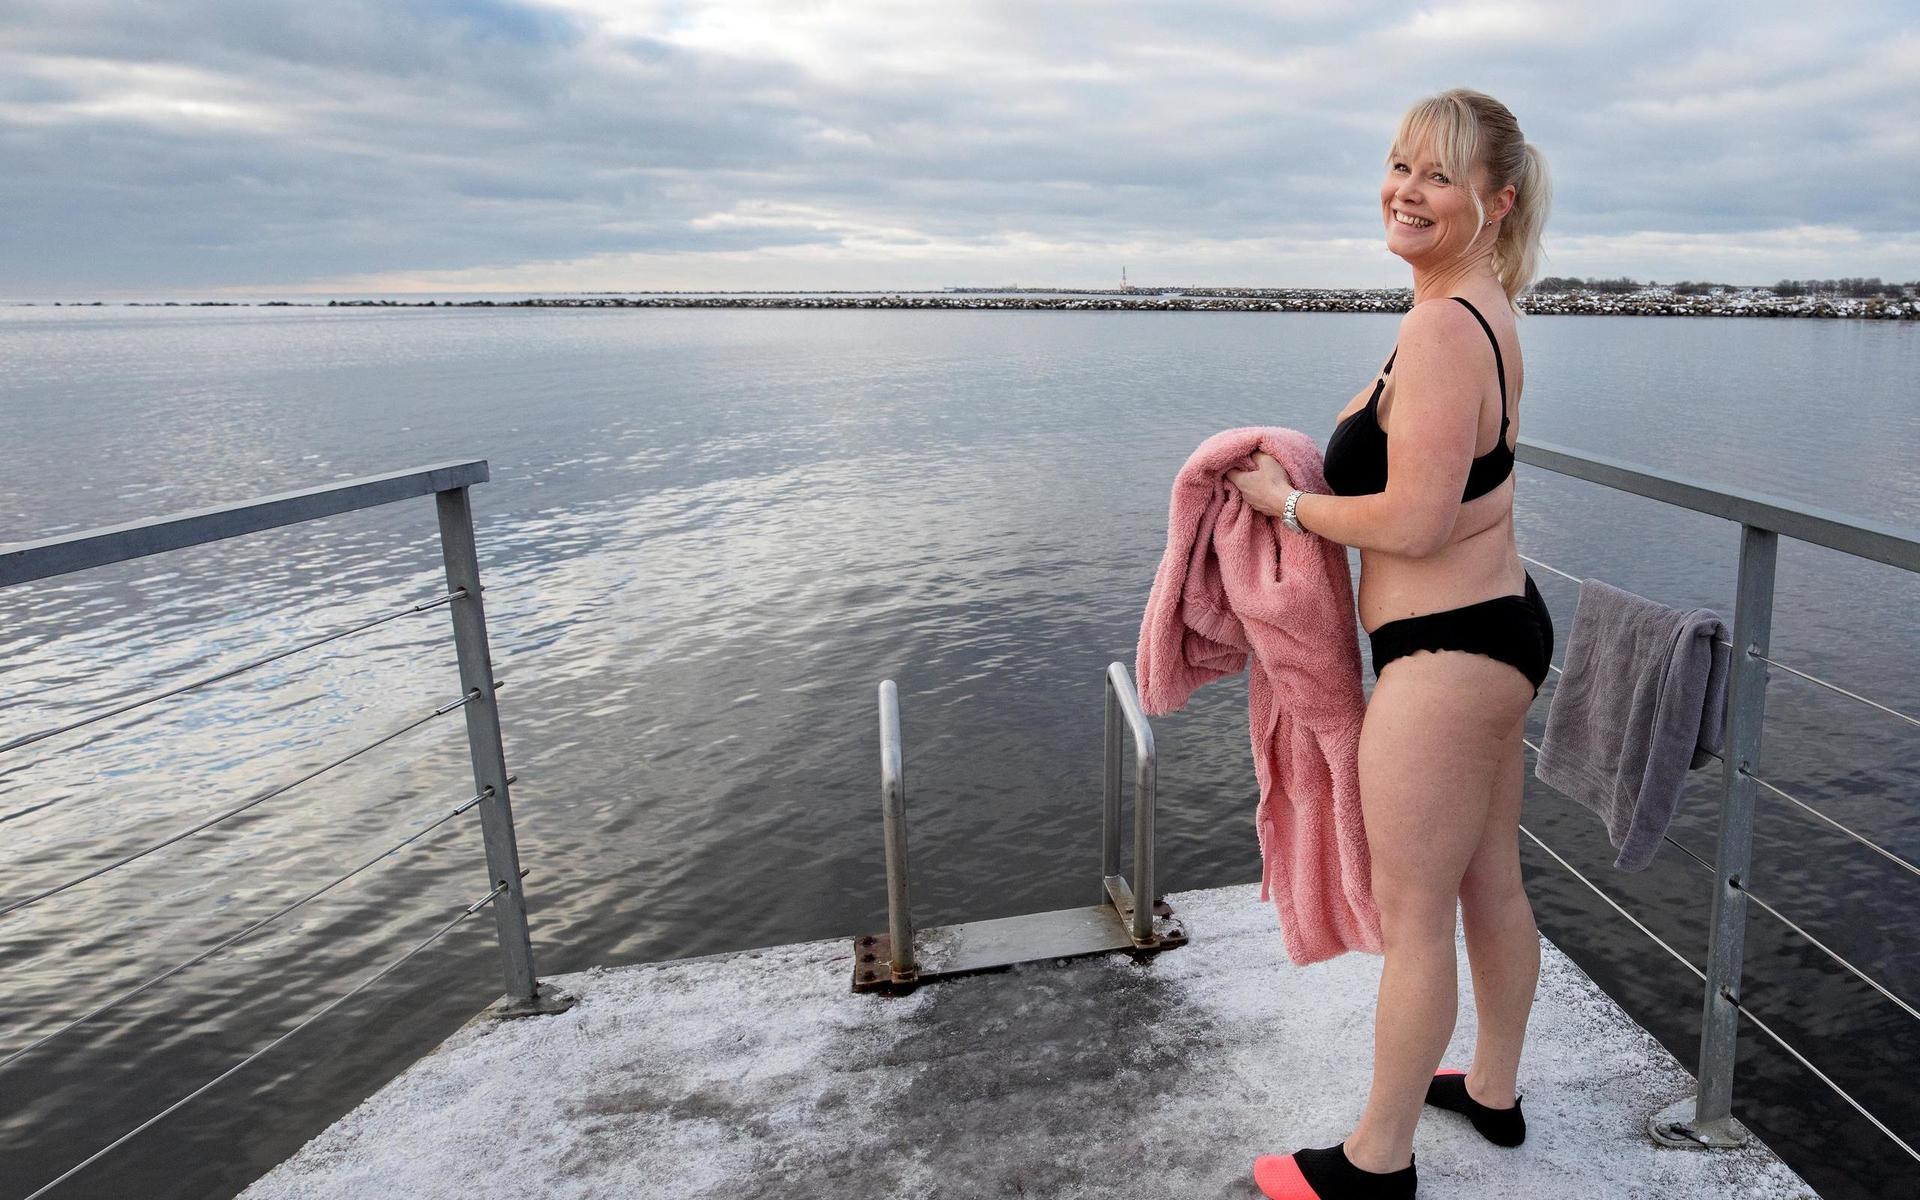 ”Ombytet kan vara det tuffaste när man ska bada. Det är synd att det inte finns någonstans att lägga kläderna här vid bryggan, säger Sophia Andersson.